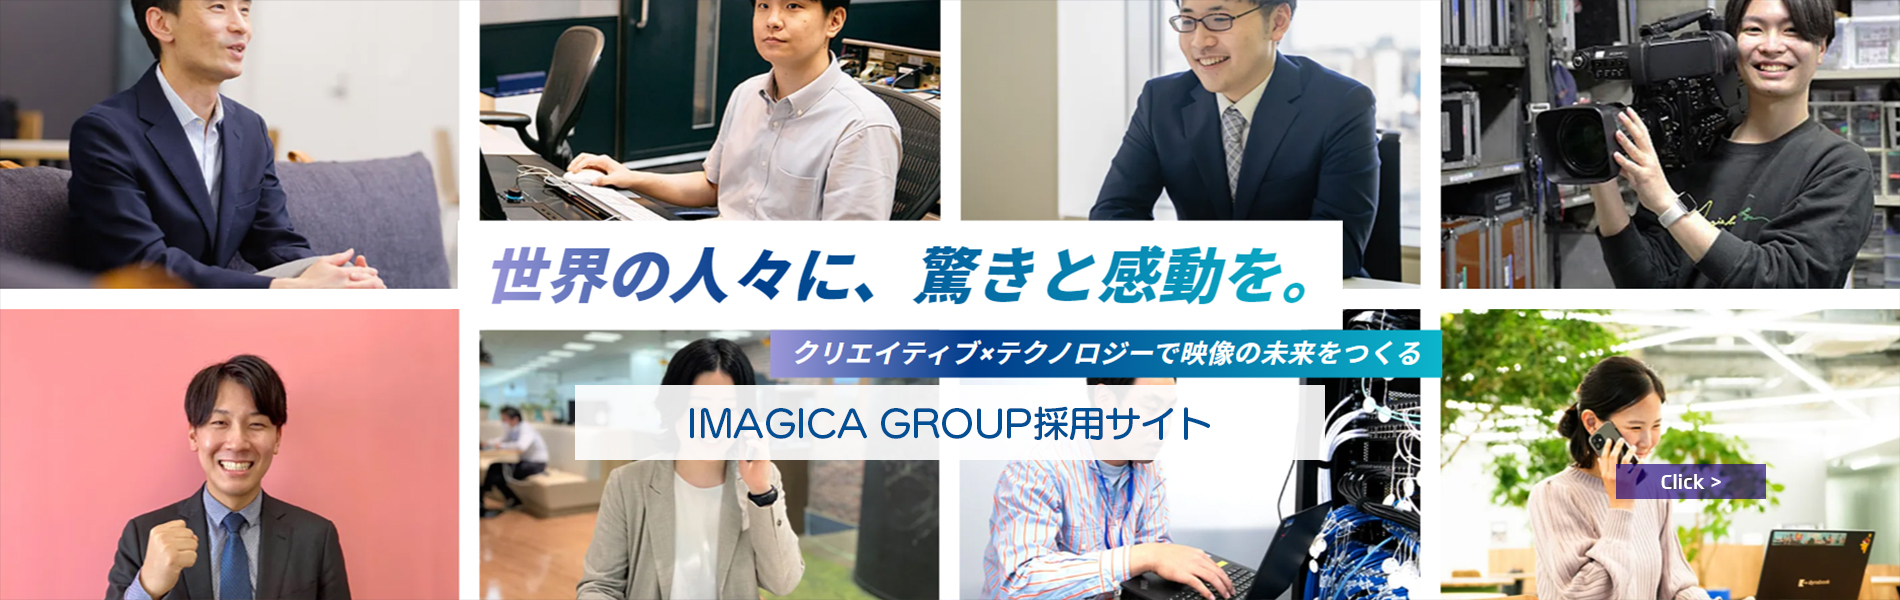 IMAGICA GROUP採用サイト